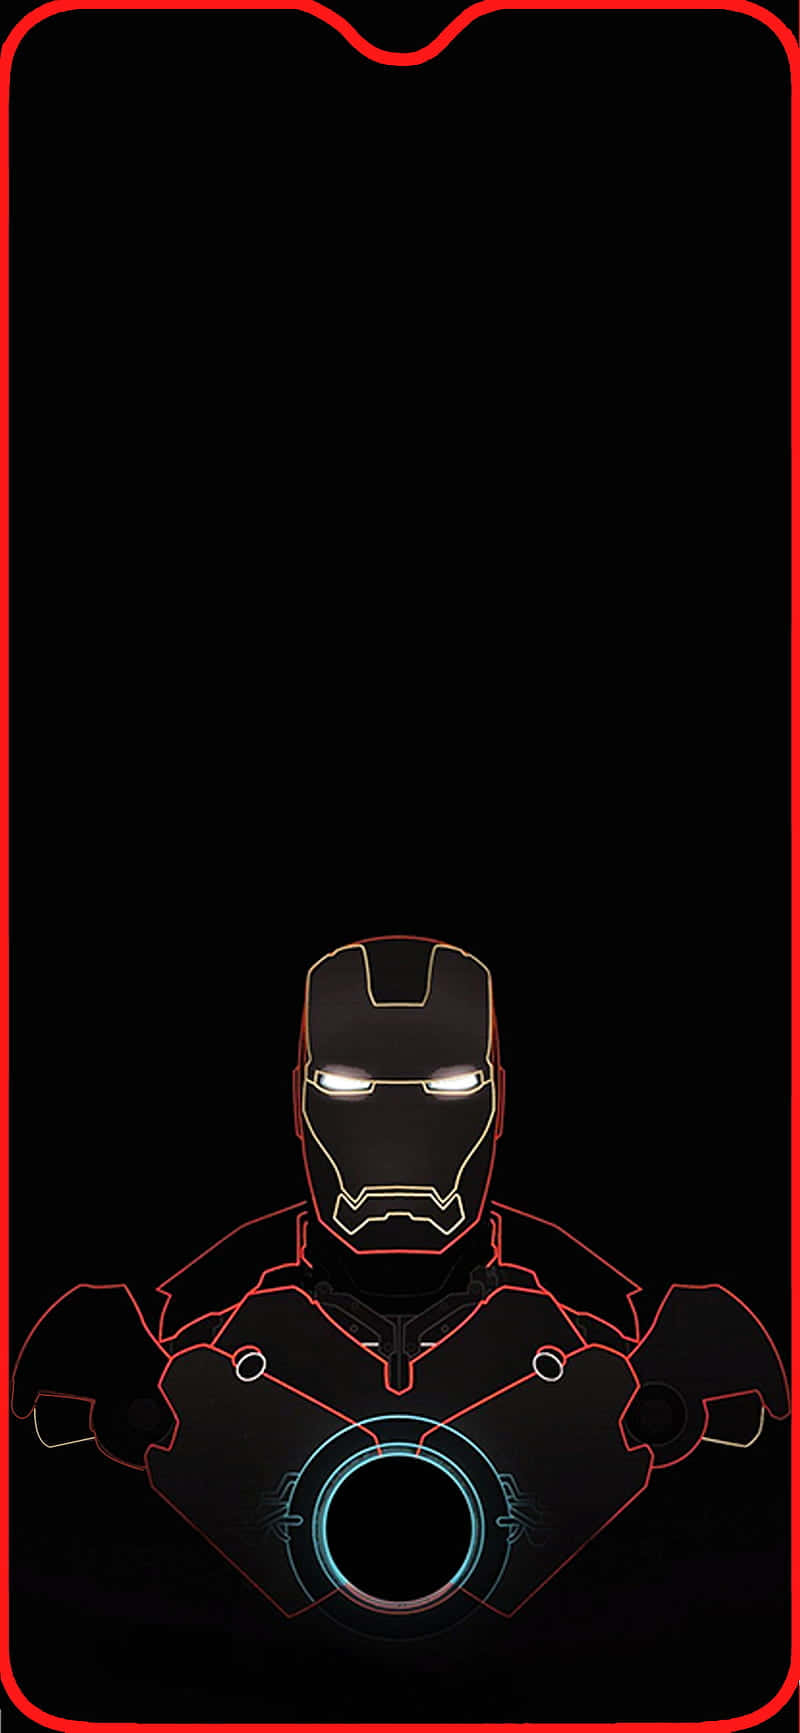 Denikoniska Iron Man I Svartvitt Wallpaper